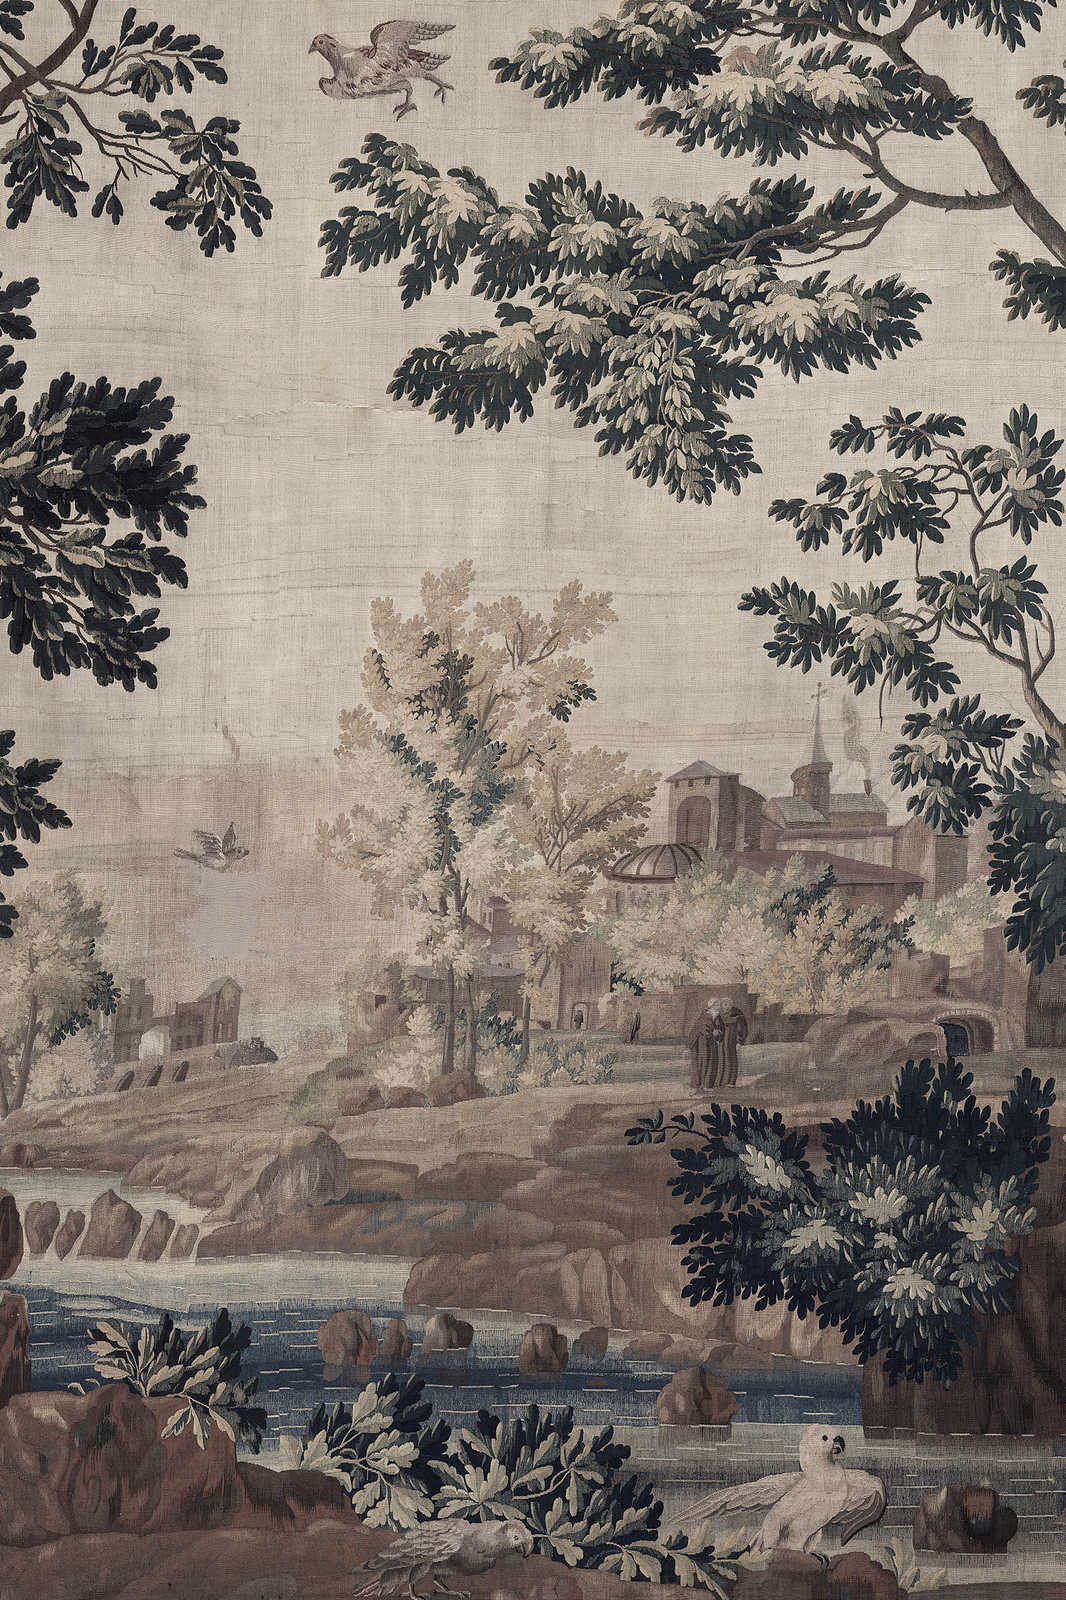             Gobelin Gallery 1 - Landschaft Leinwandbild historischer Wandteppich – 1,20 m x 0,80 m
        